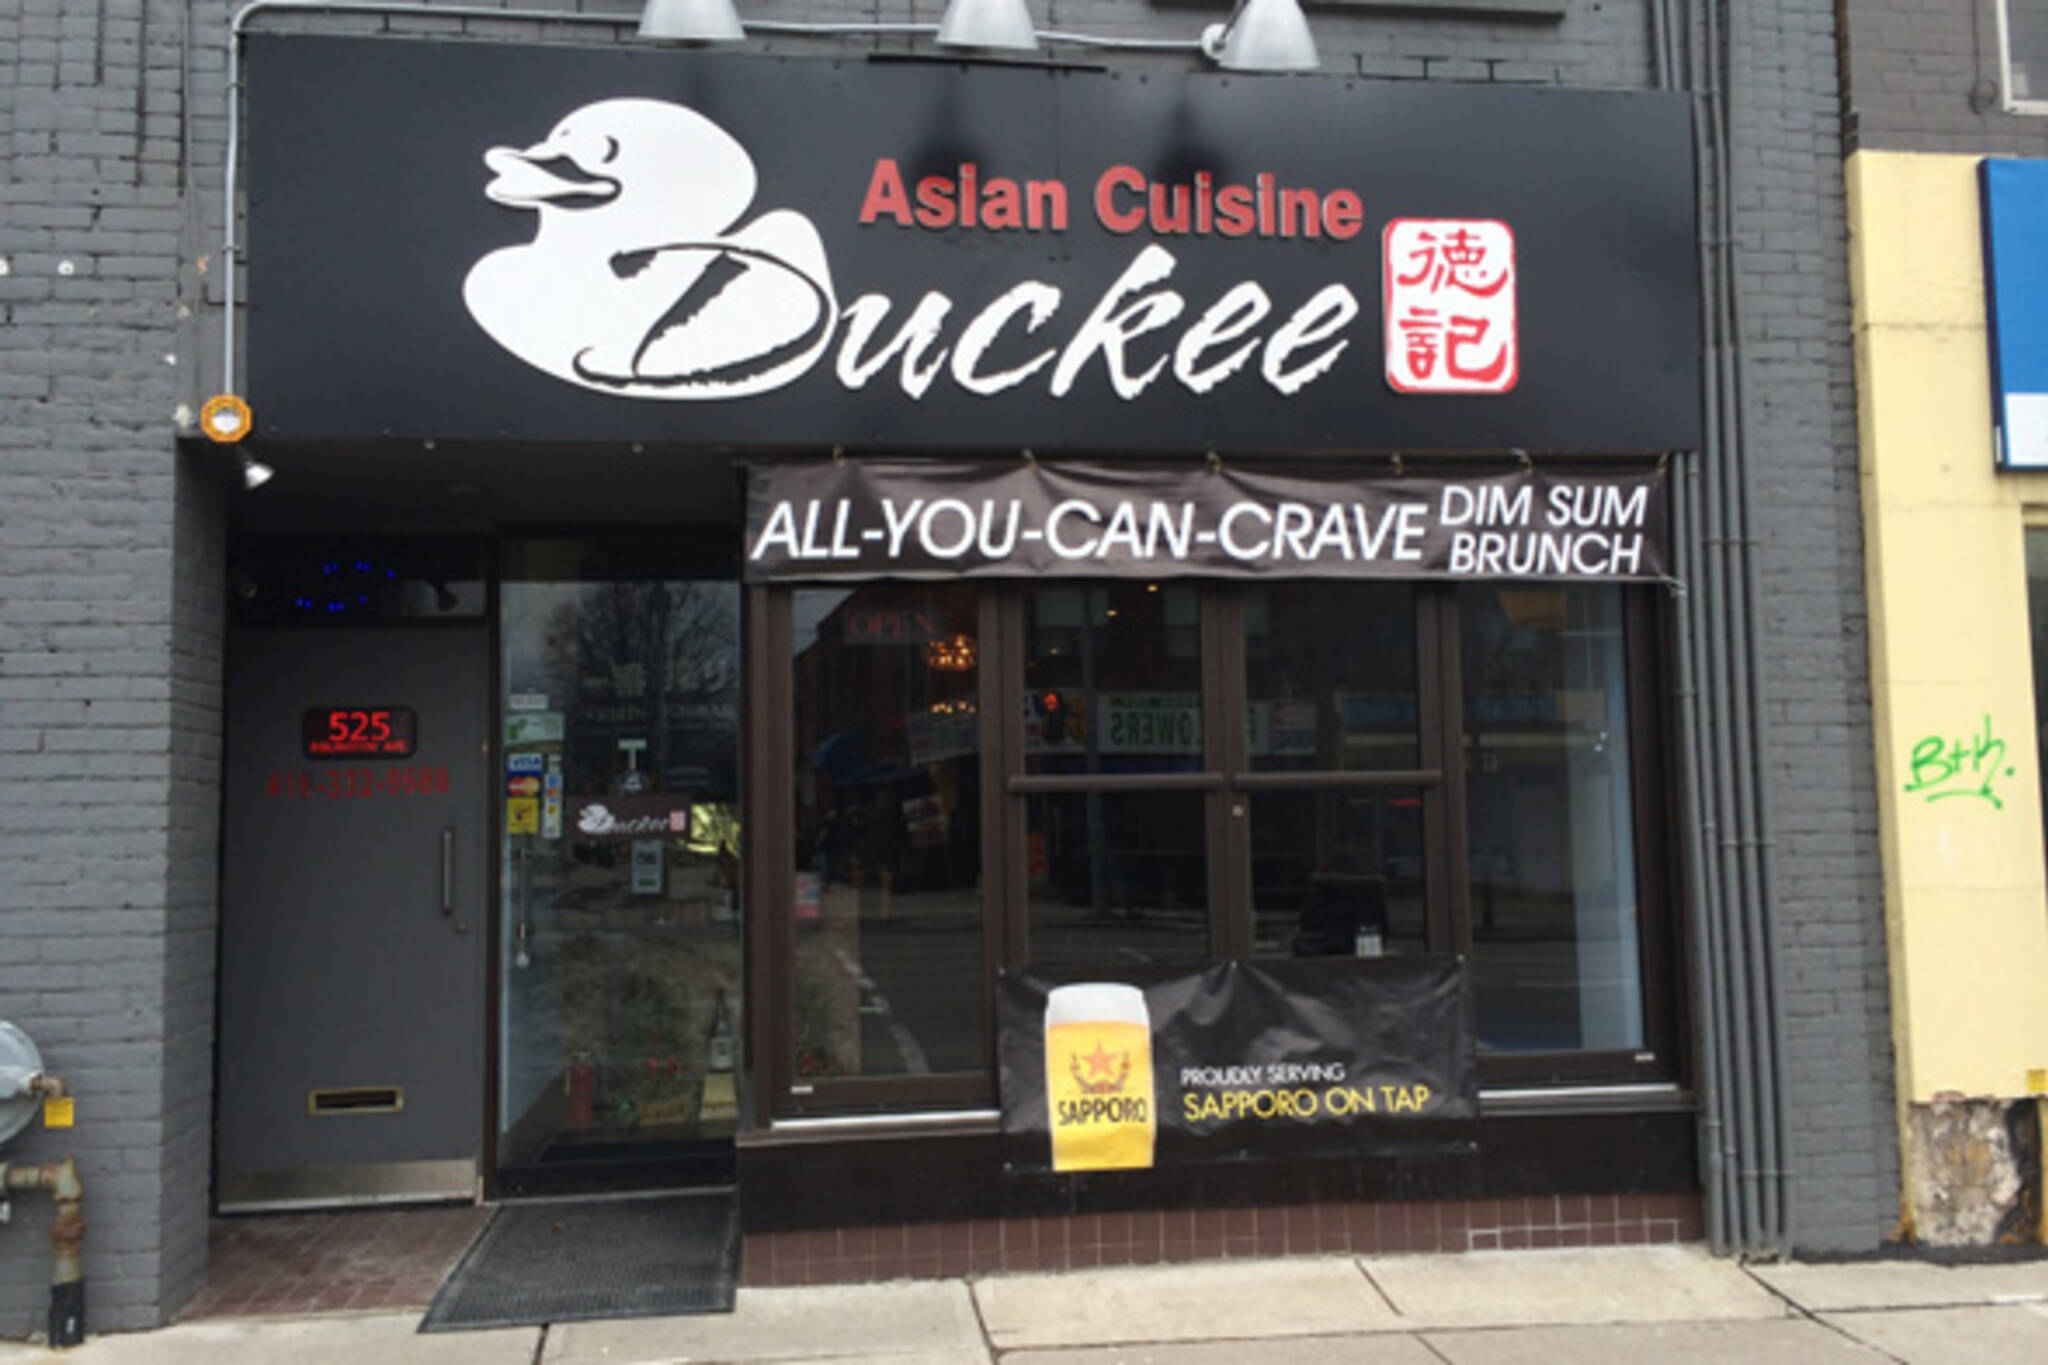 Duckee Toronto